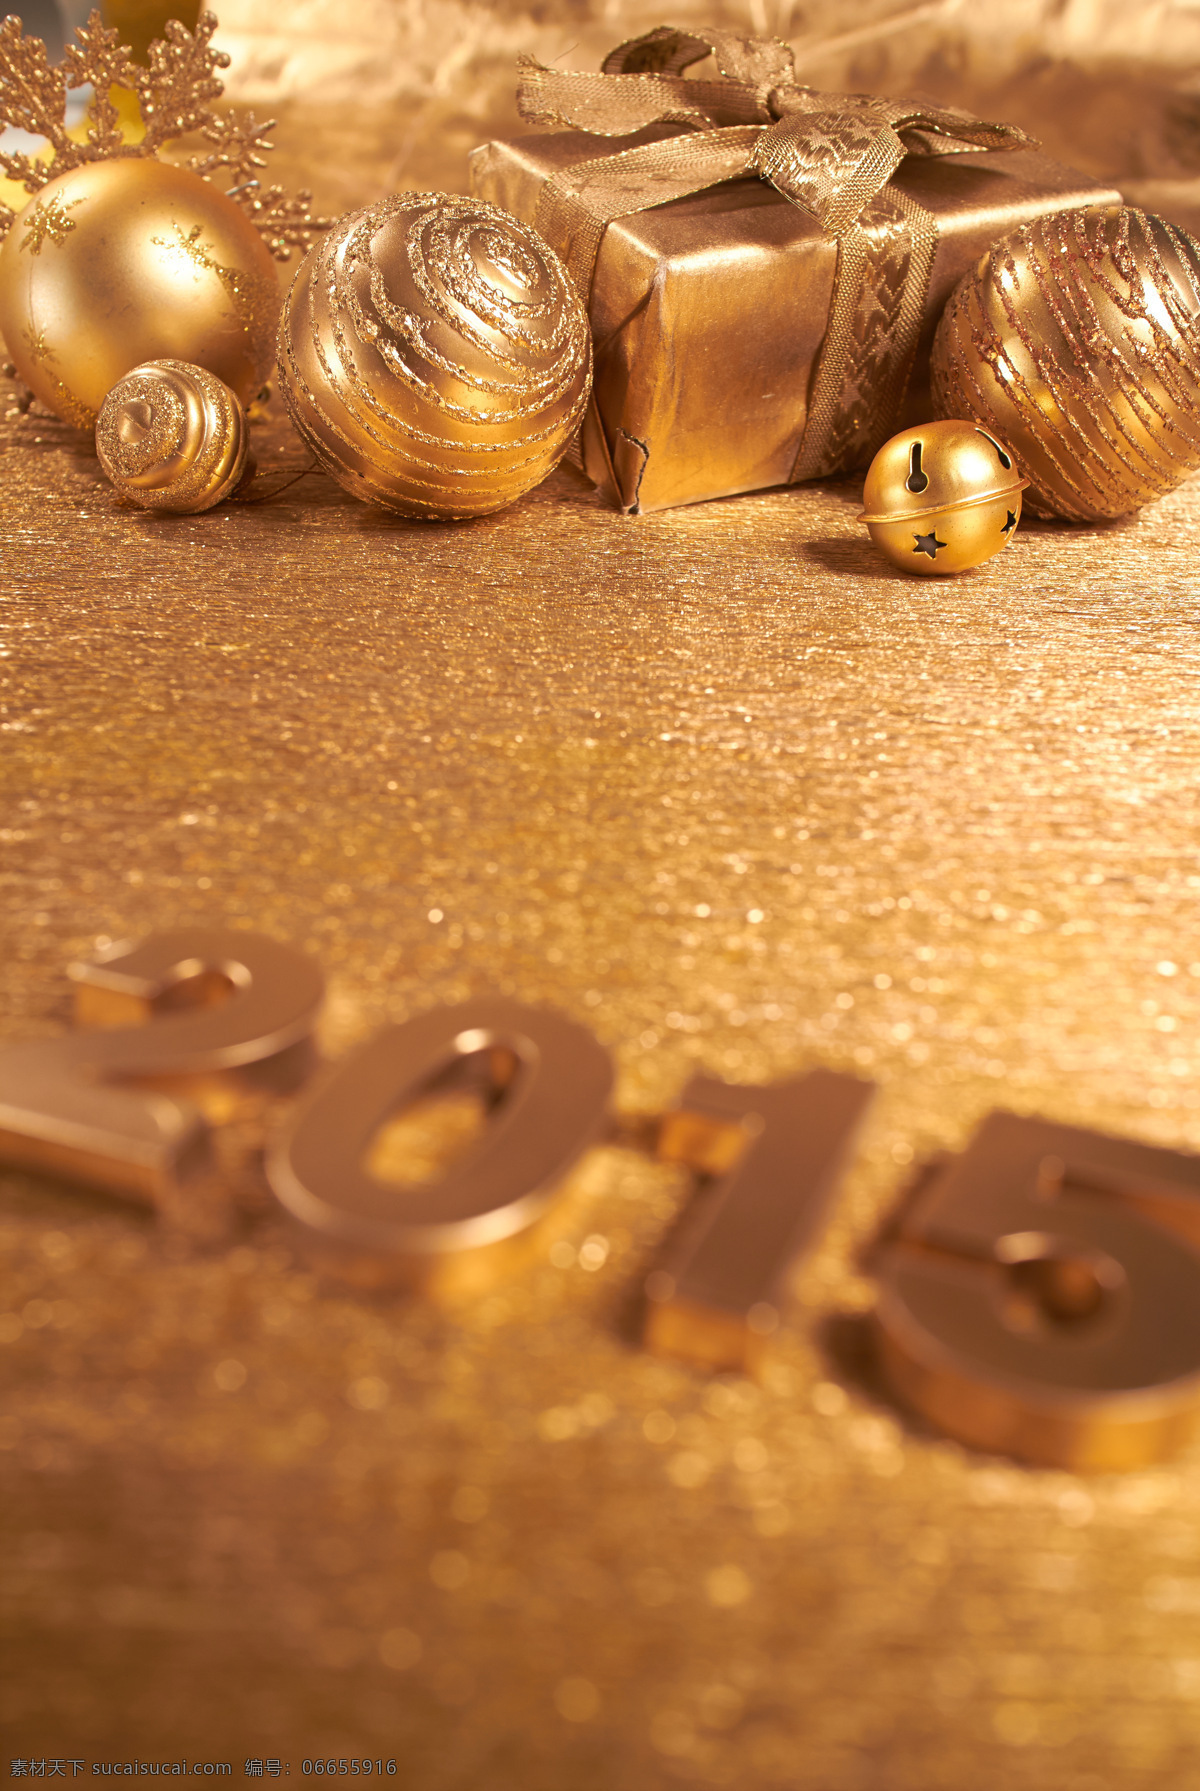 金色 2015 圣诞节 装饰物 新年 圣诞节装饰物 金色圣诞球 铃铛 节日庆典 生活百科 棕色